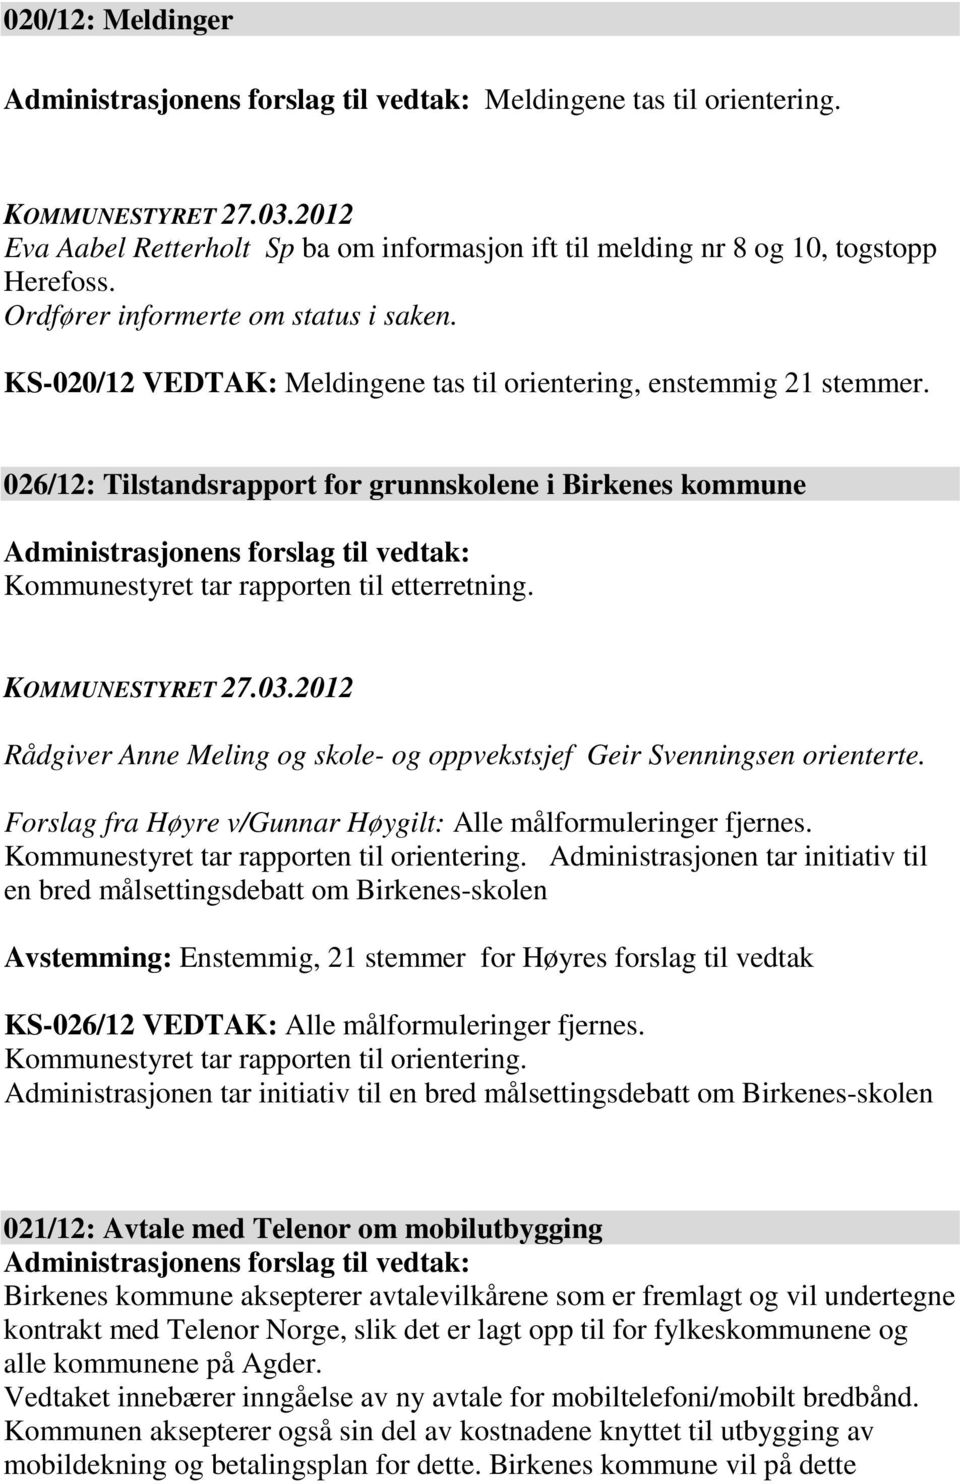 026/12: Tilstandsrapport for grunnskolene i Birkenes kommune Administrasjonens forslag til vedtak: Kommunestyret tar rapporten til etterretning.